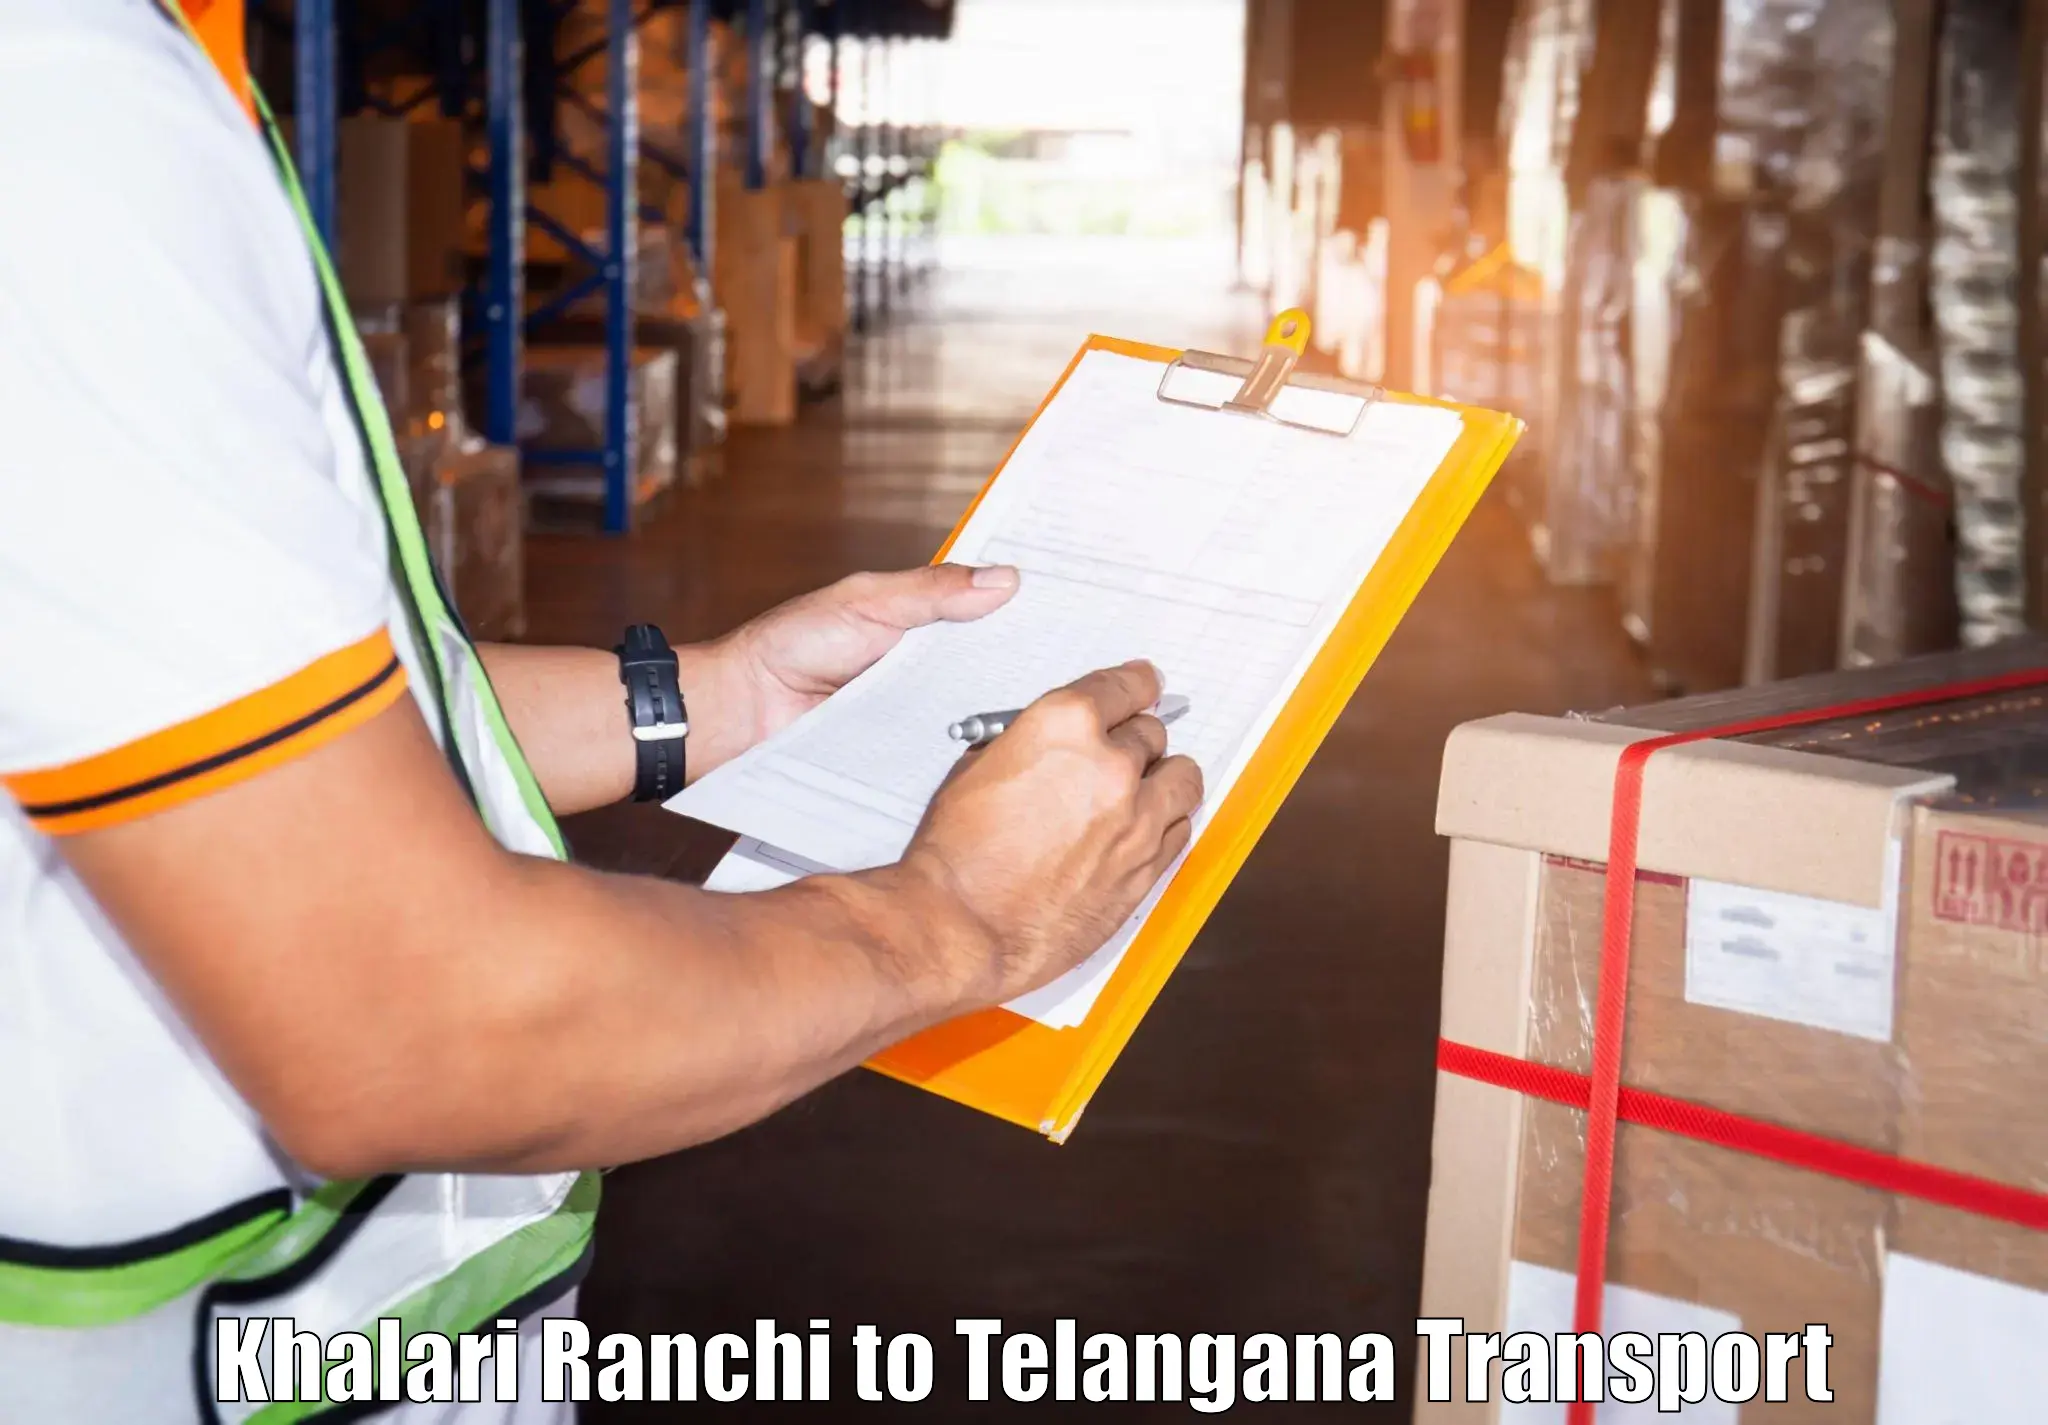 Nationwide transport services Khalari Ranchi to Kothakota